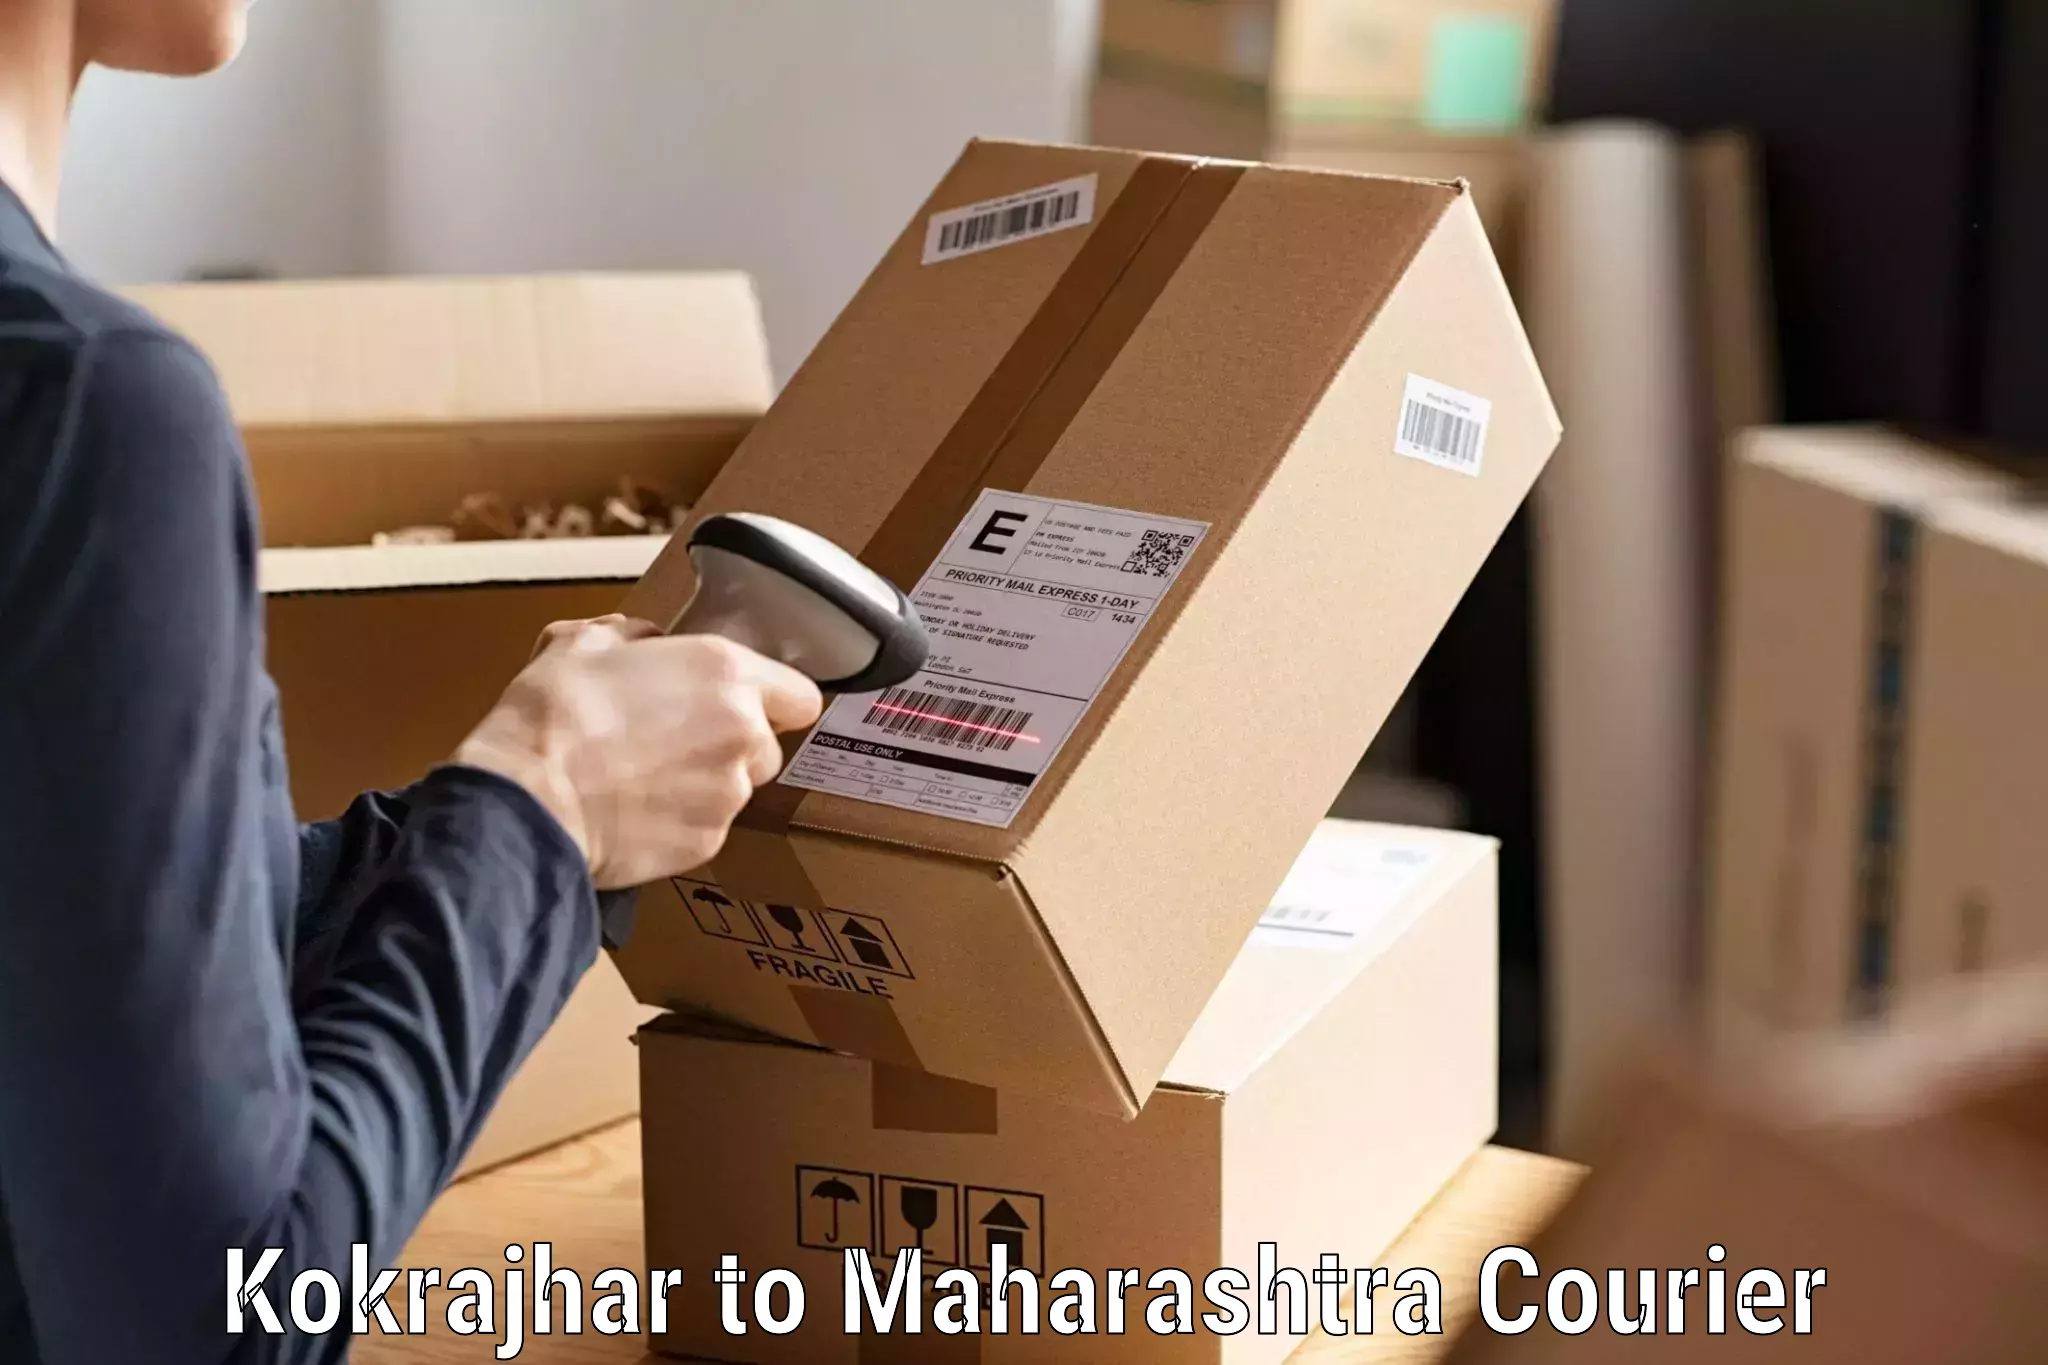 Cash on delivery service Kokrajhar to Chamorshi